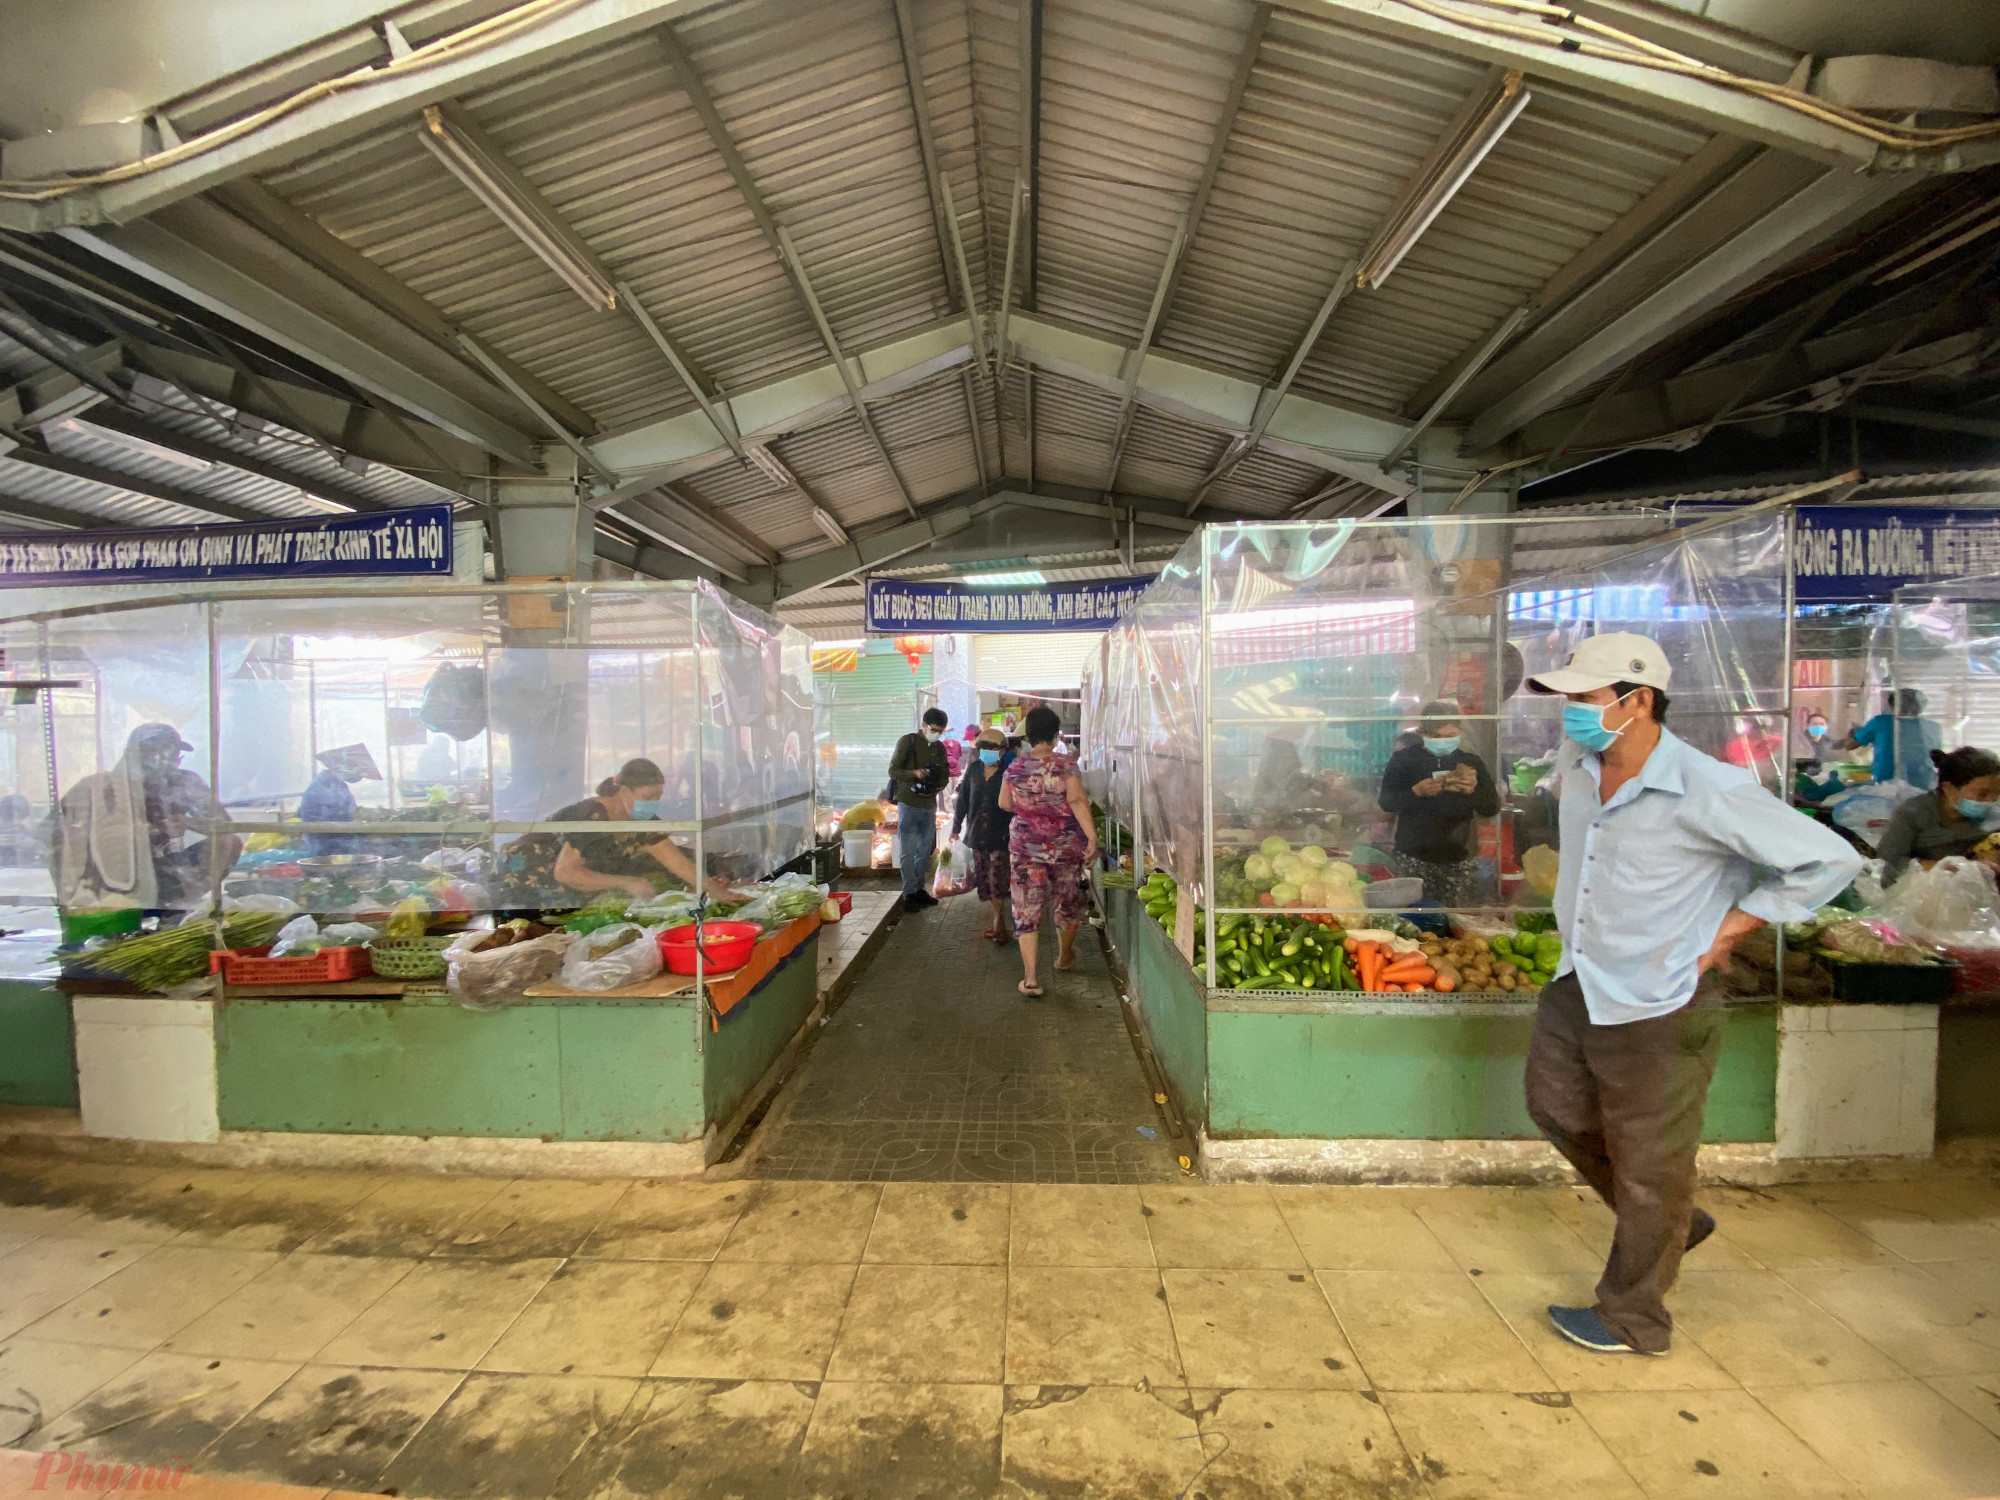 Chợ Ngã Ba Bầu (đường Tô Ký, quận 12) nằm trong nhóm các chợ duy trì hoạt động bình thường từ đầu đợt dịch nhờ thực hiện khá tốt việc phòng dịch khi lắp đặt vách ngăn giữa người bán và người mua.